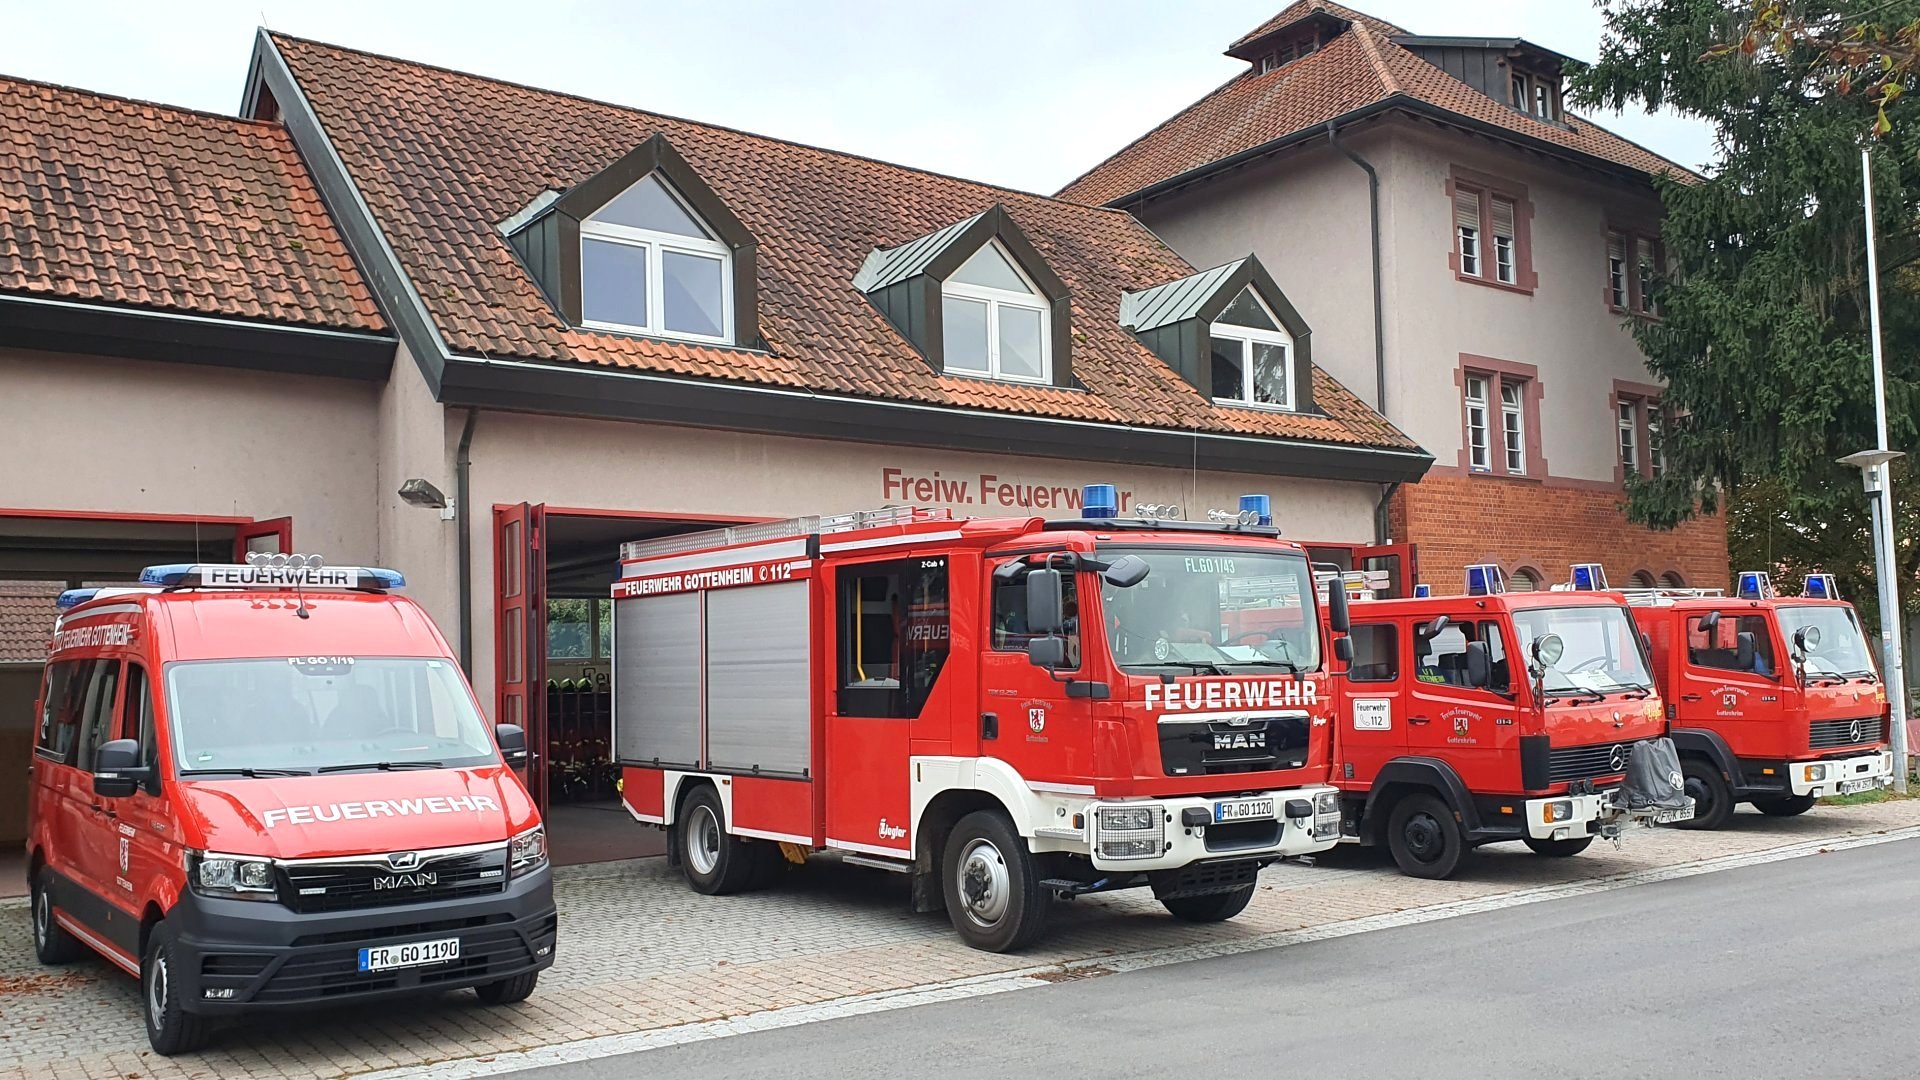 Feuerwehrhaus mit Fahrzeugen 2021